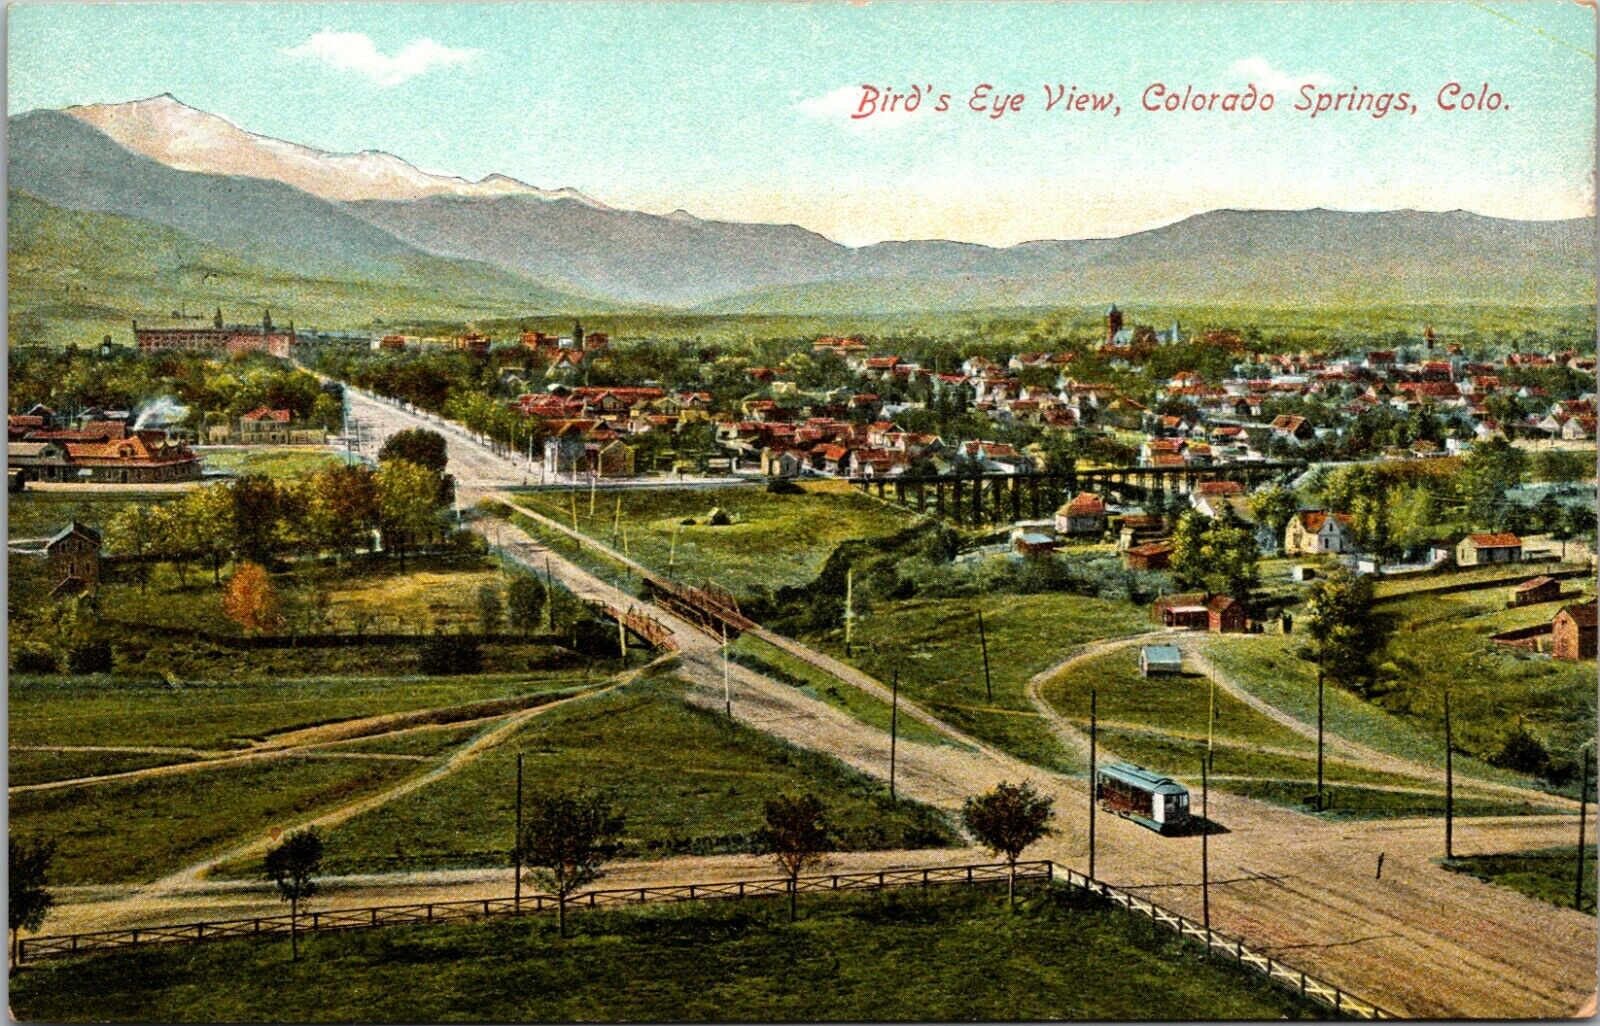 Birds-Eye View Colorado Springs Postcard (Early 1900s)